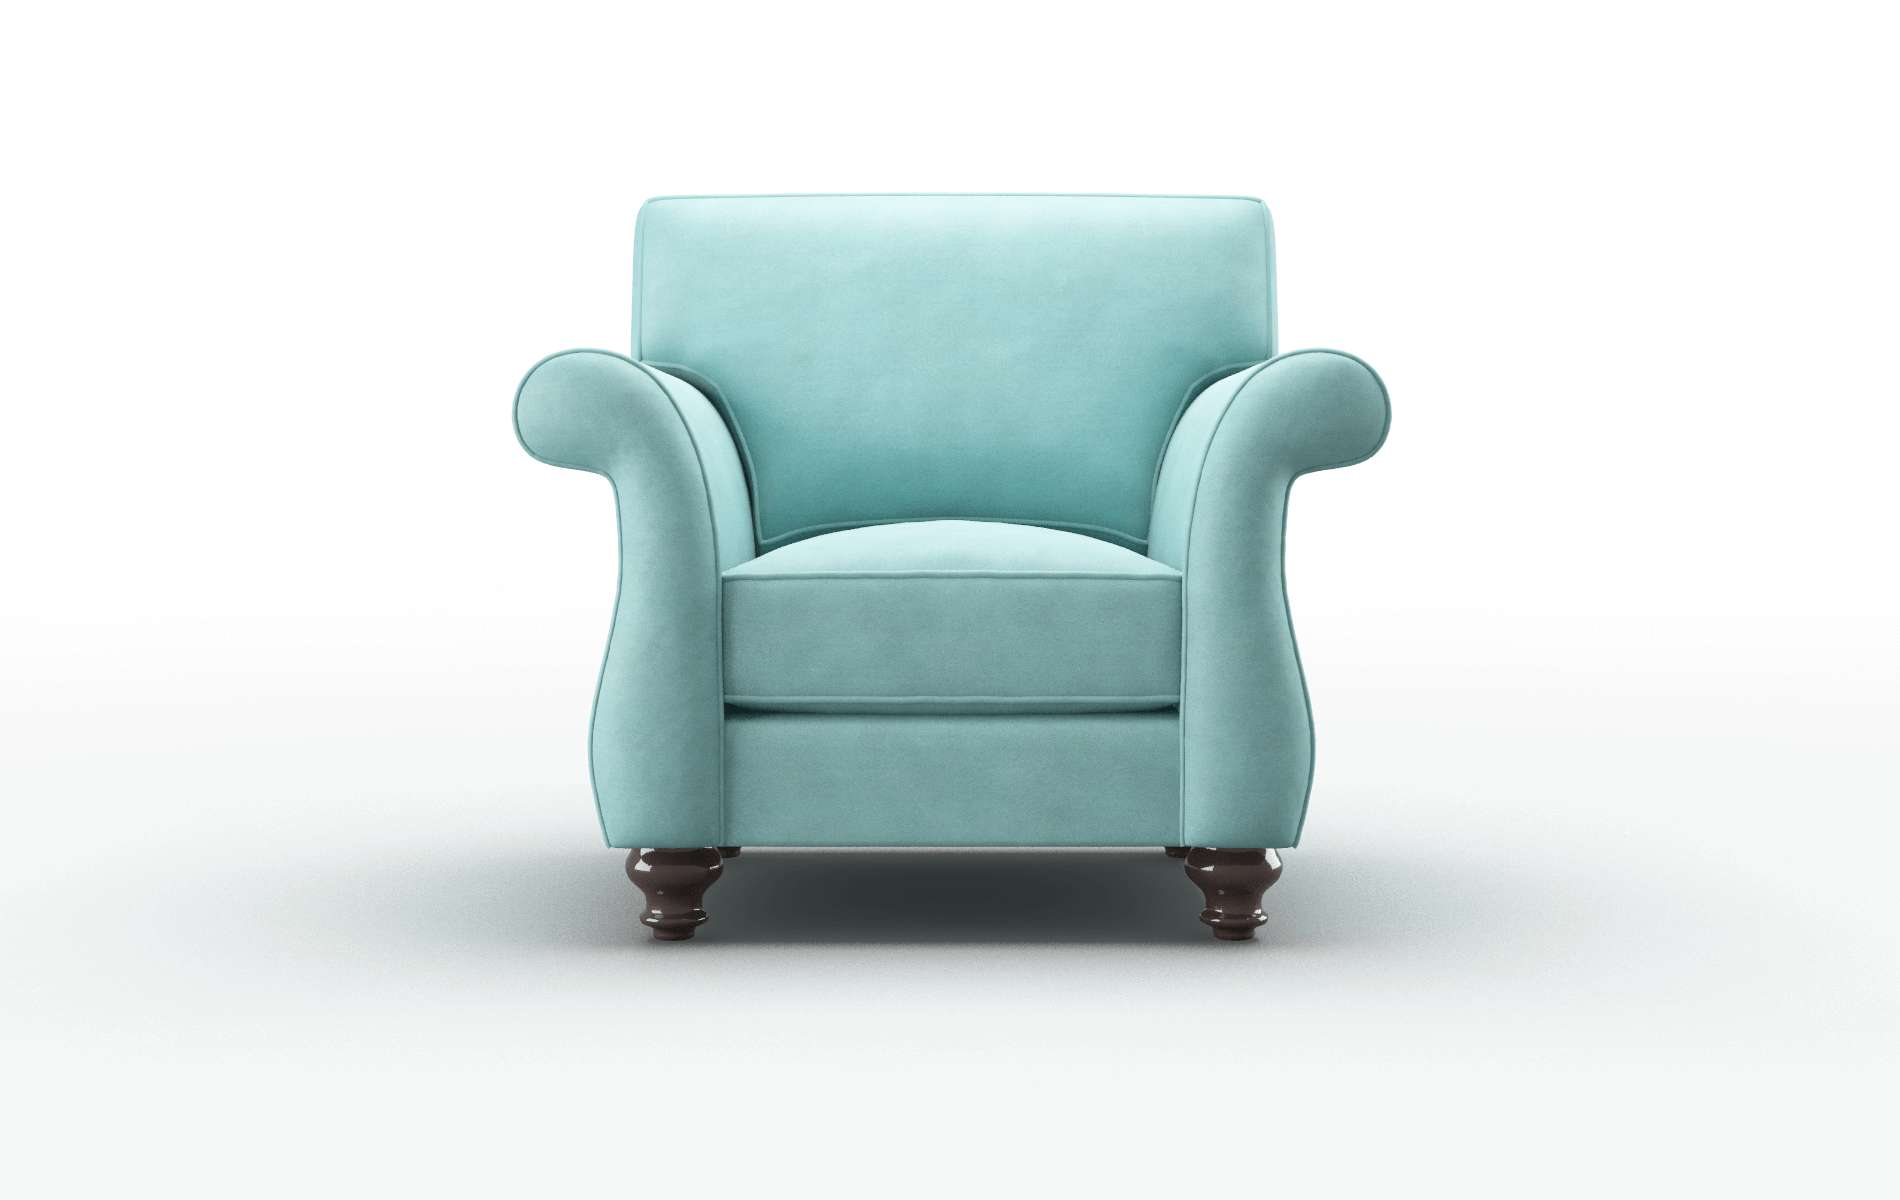 Pisa Curious Turquoise Chair espresso legs 1